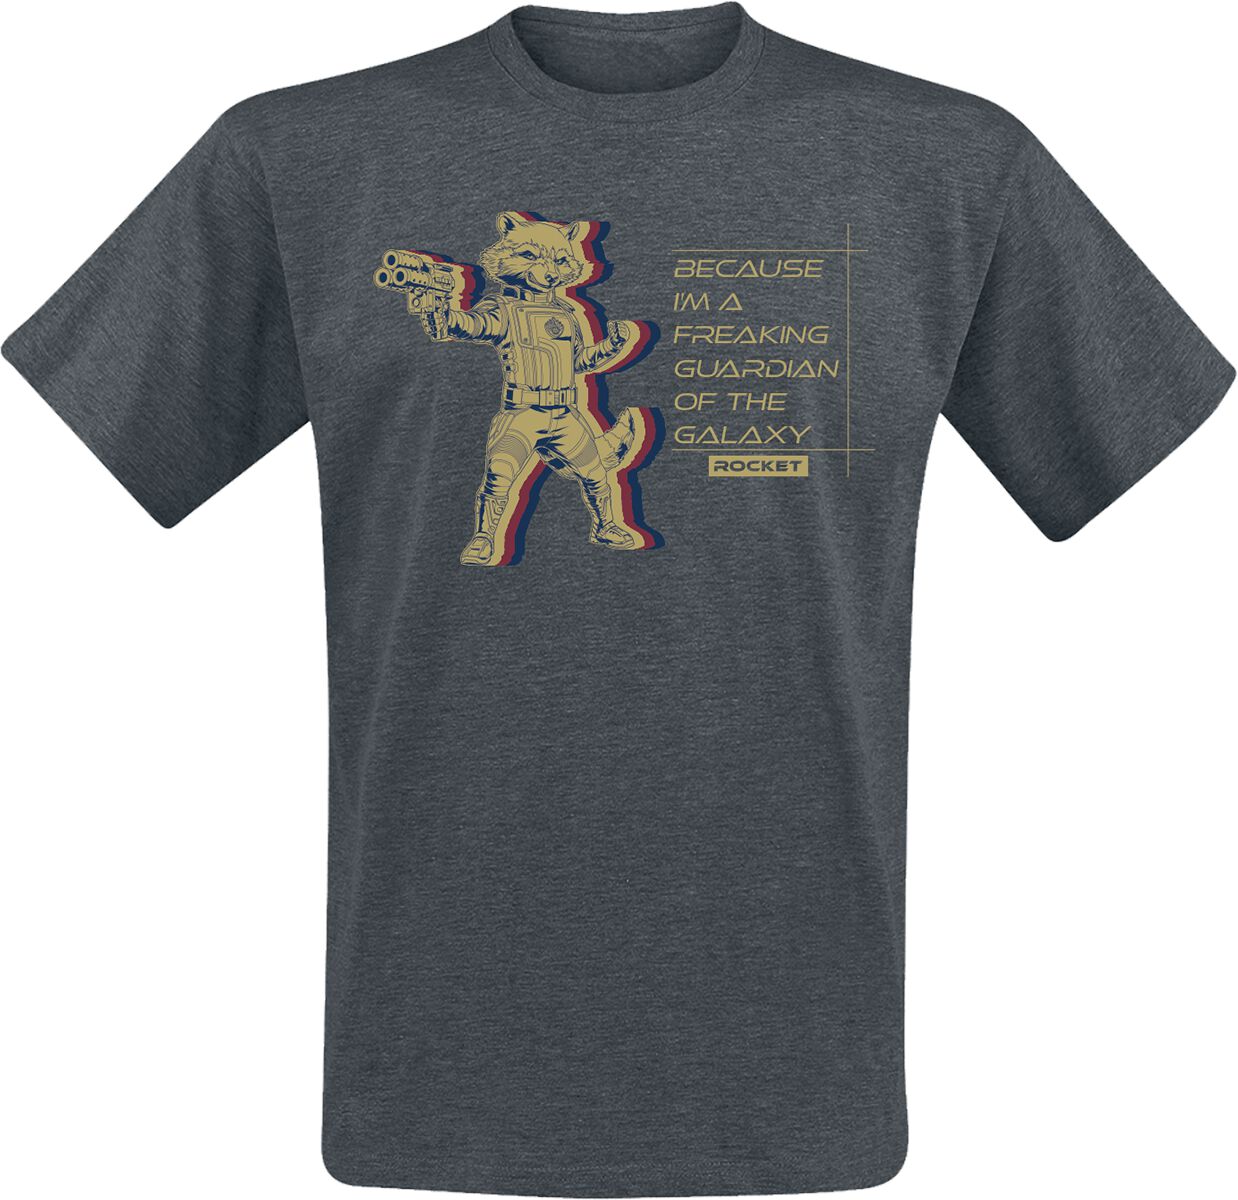 Guardians Of The Galaxy - Marvel T-Shirt - Vol. 3 - Rocket - S bis XXL - für Männer - Größe M - grau  - EMP exklusives Merchandise!